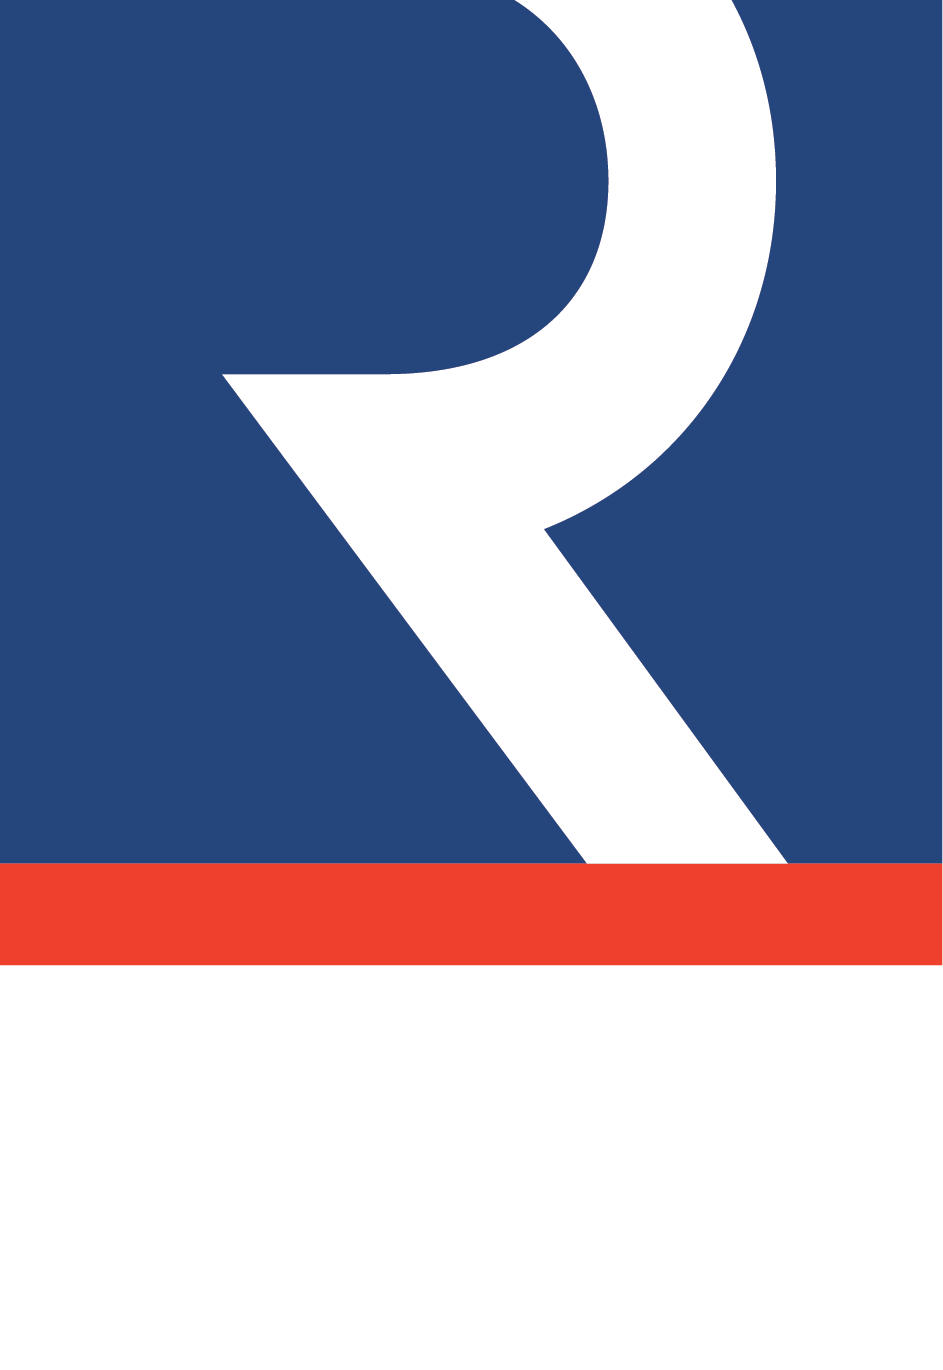 Rykadan Capital